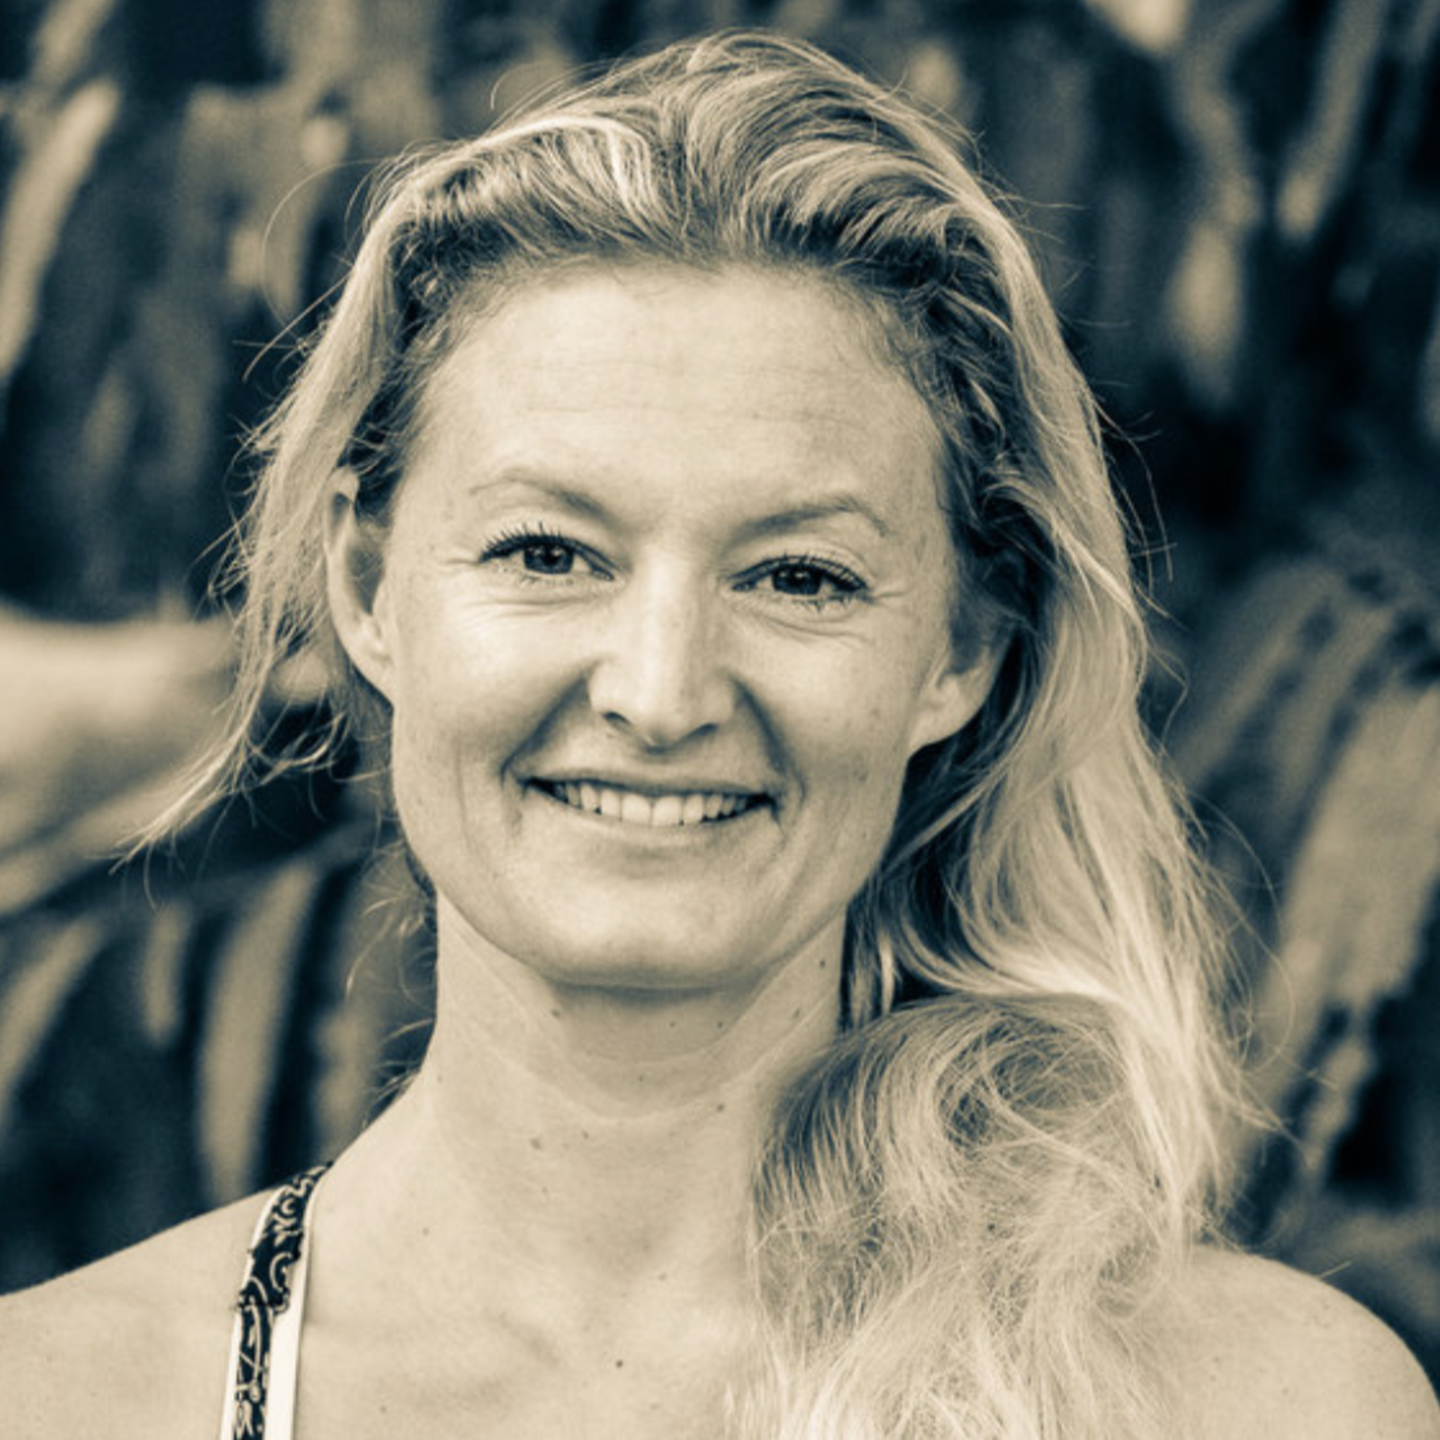 Sandra ist Yoga-Lehrerin und wurde von Judith Döker für ihr Projekt interviewt.